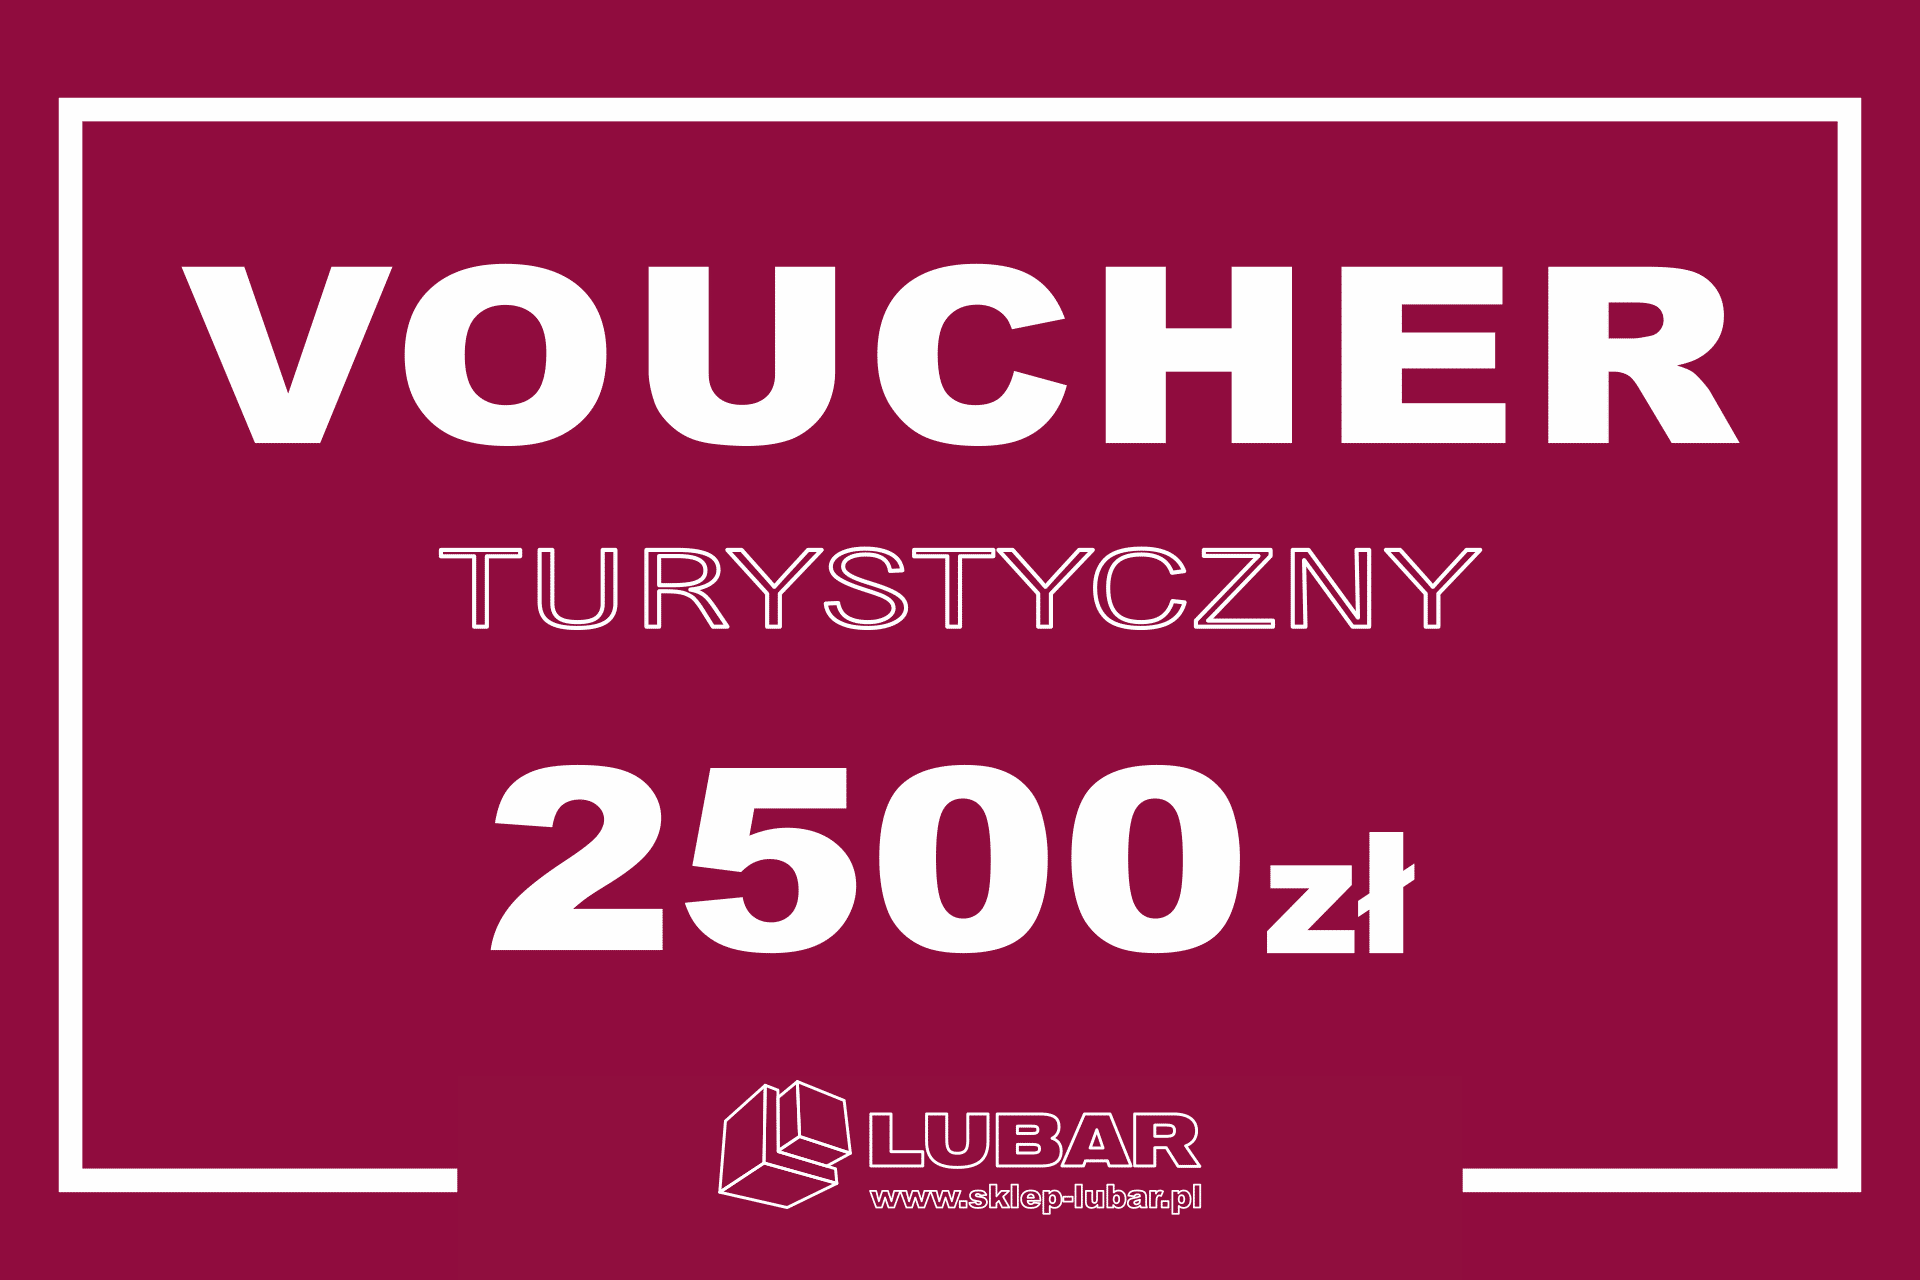 Voucher Turystyczny na 2500 zł – NOWOŚĆ! 